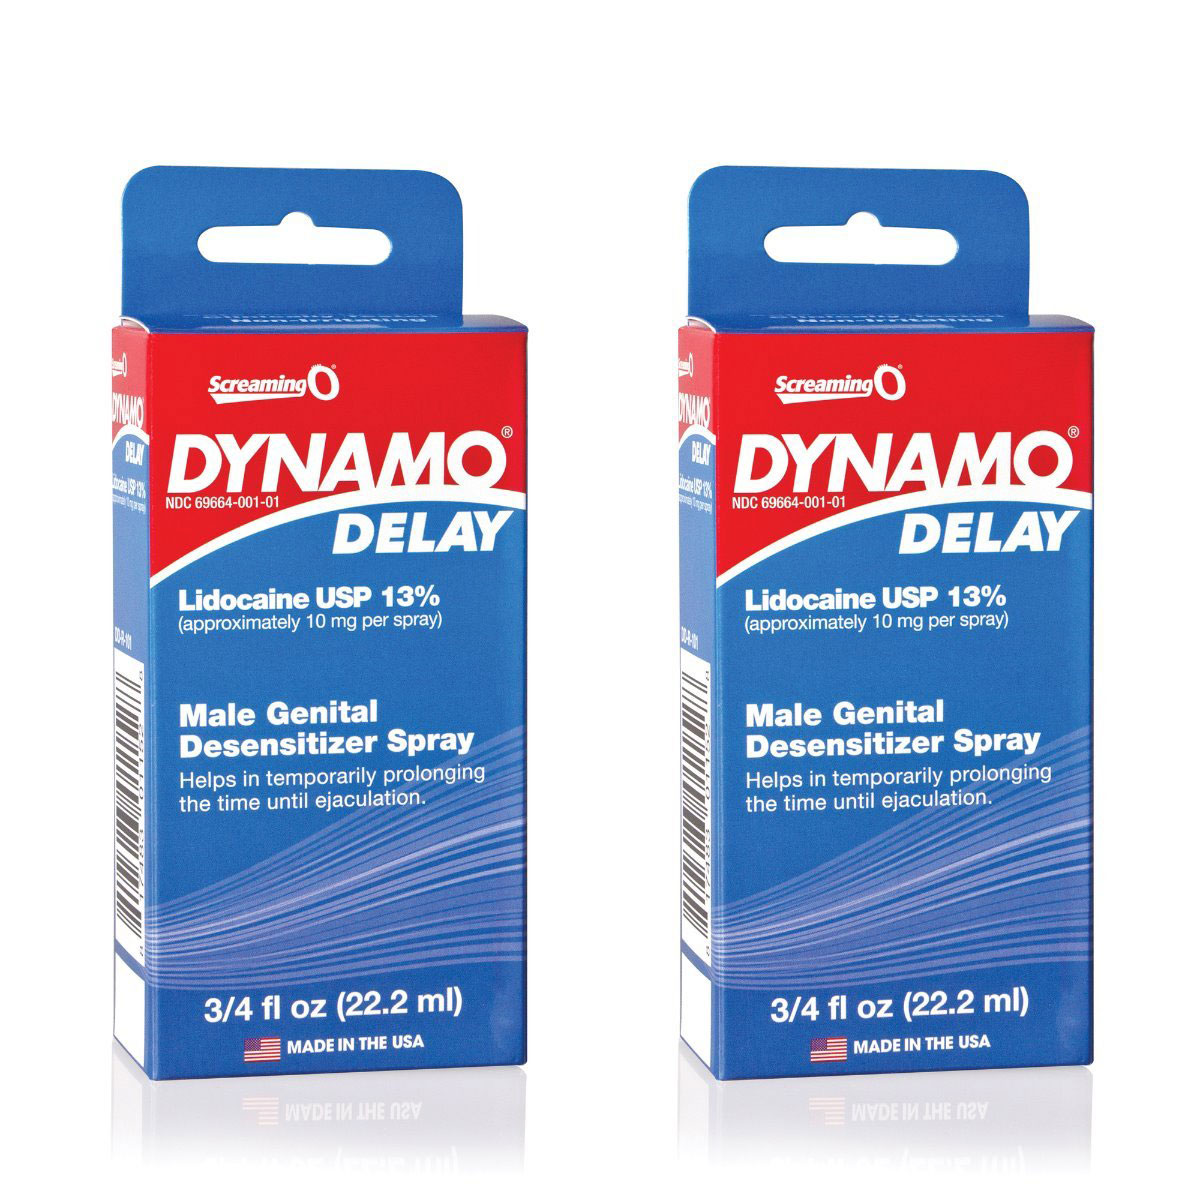 Thuốc xịt kéo dài quan hệ Dynamo Delay USA cao cấp